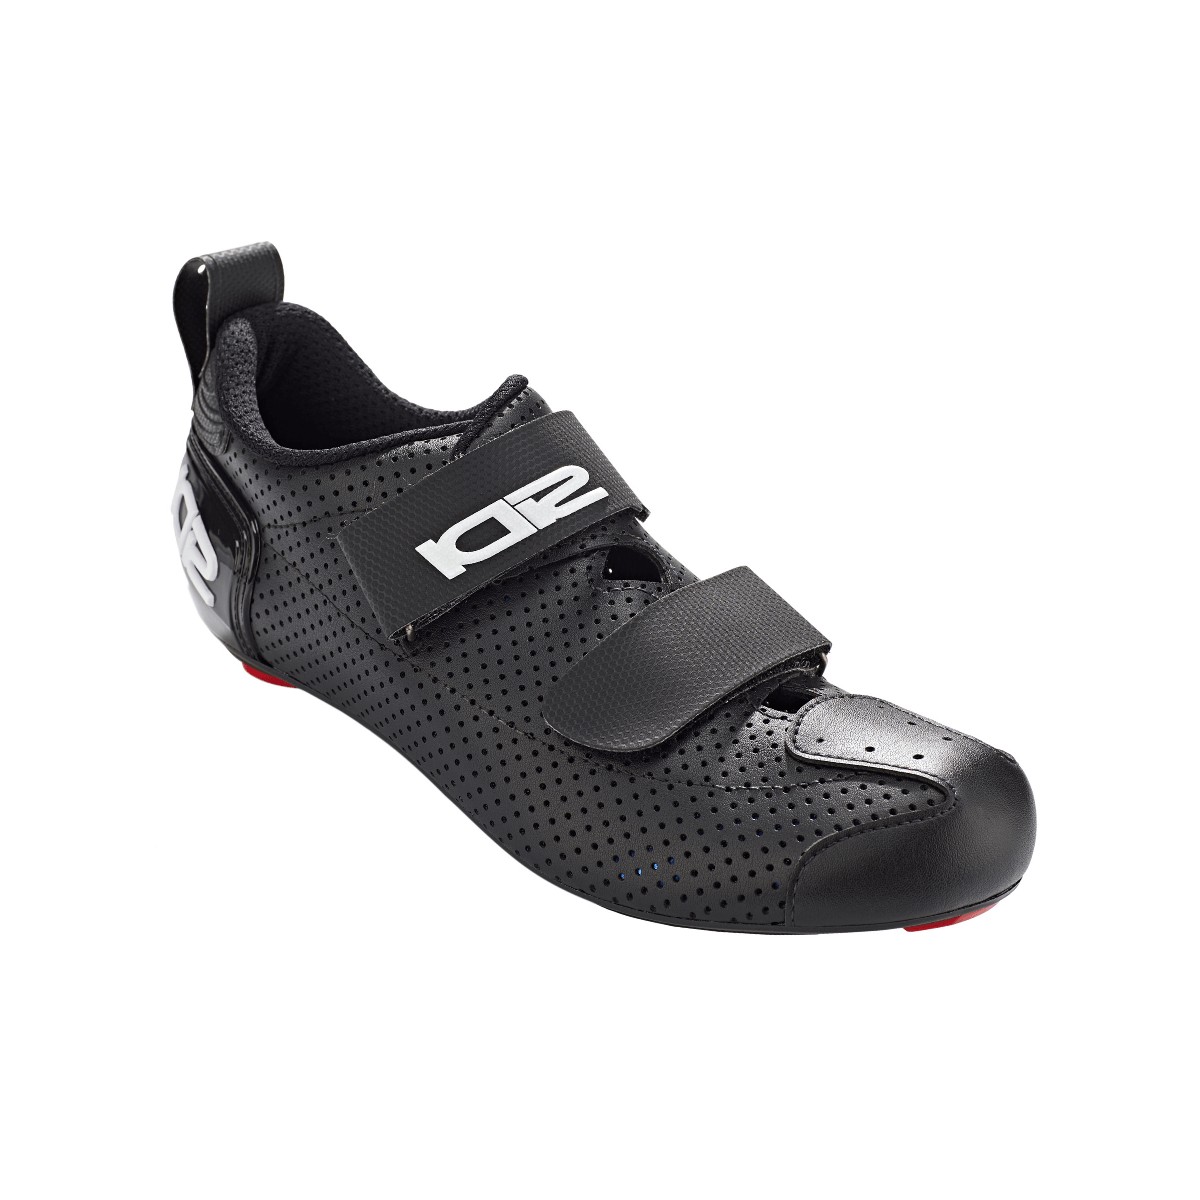 Sidi T5 Air Carbon Schwarz Weiß Triathlon Schuhe, Größe 41 - EUR